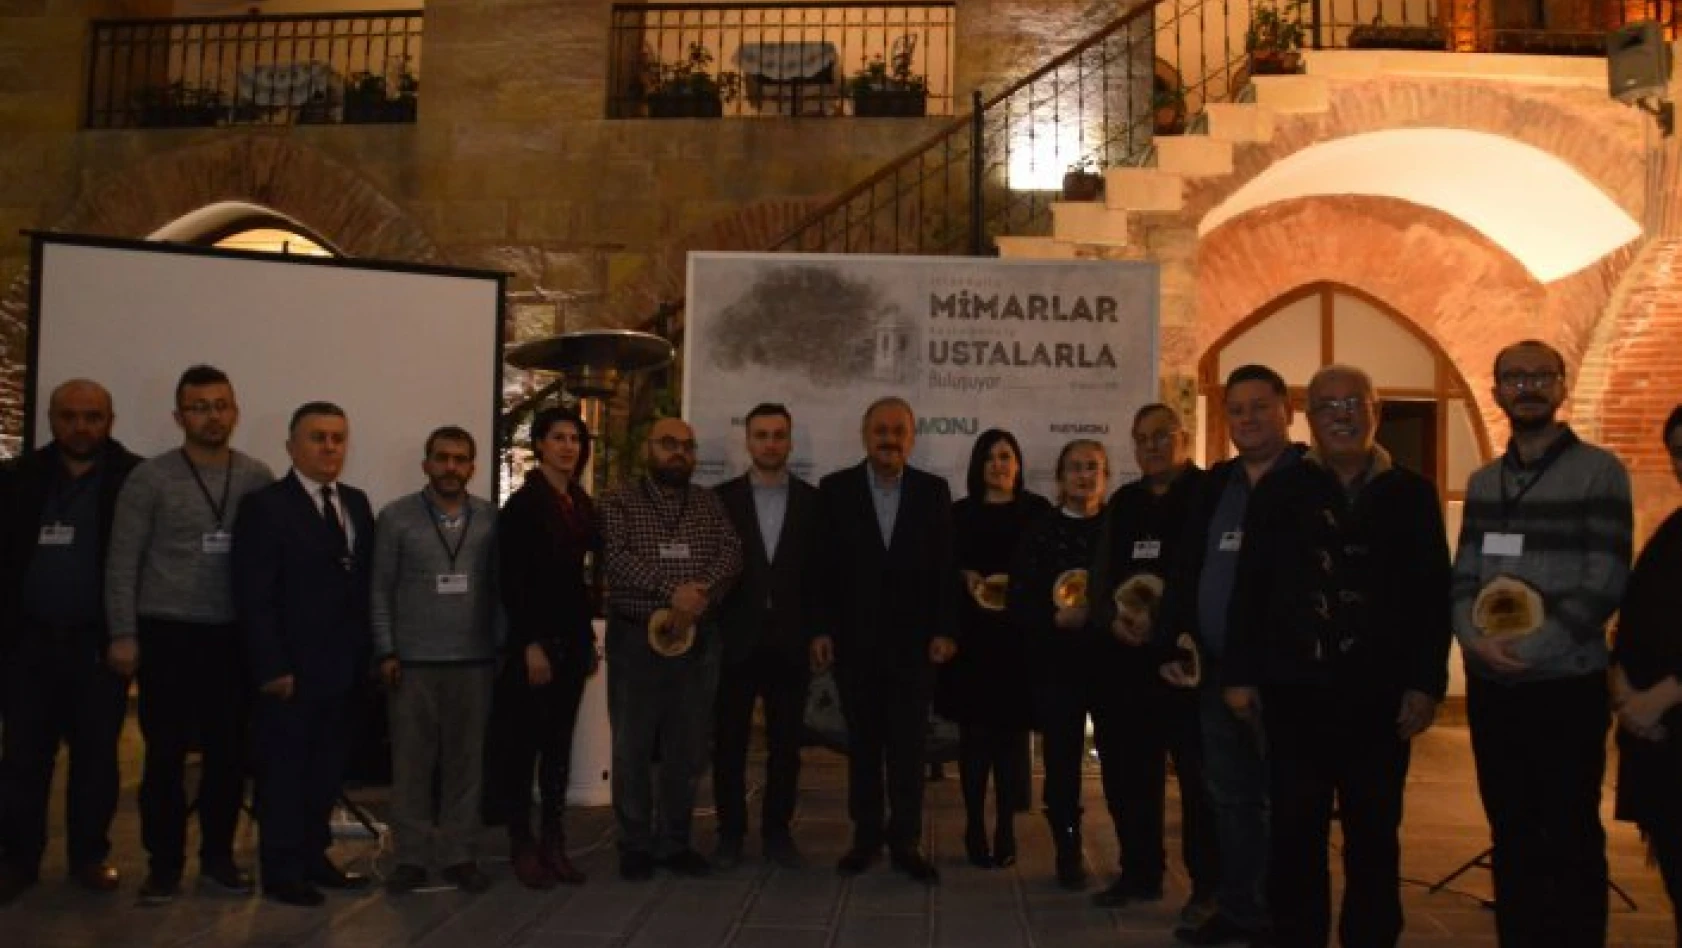 İstanbullu Mimarlar Kastamonulu Ustalarla buluştu